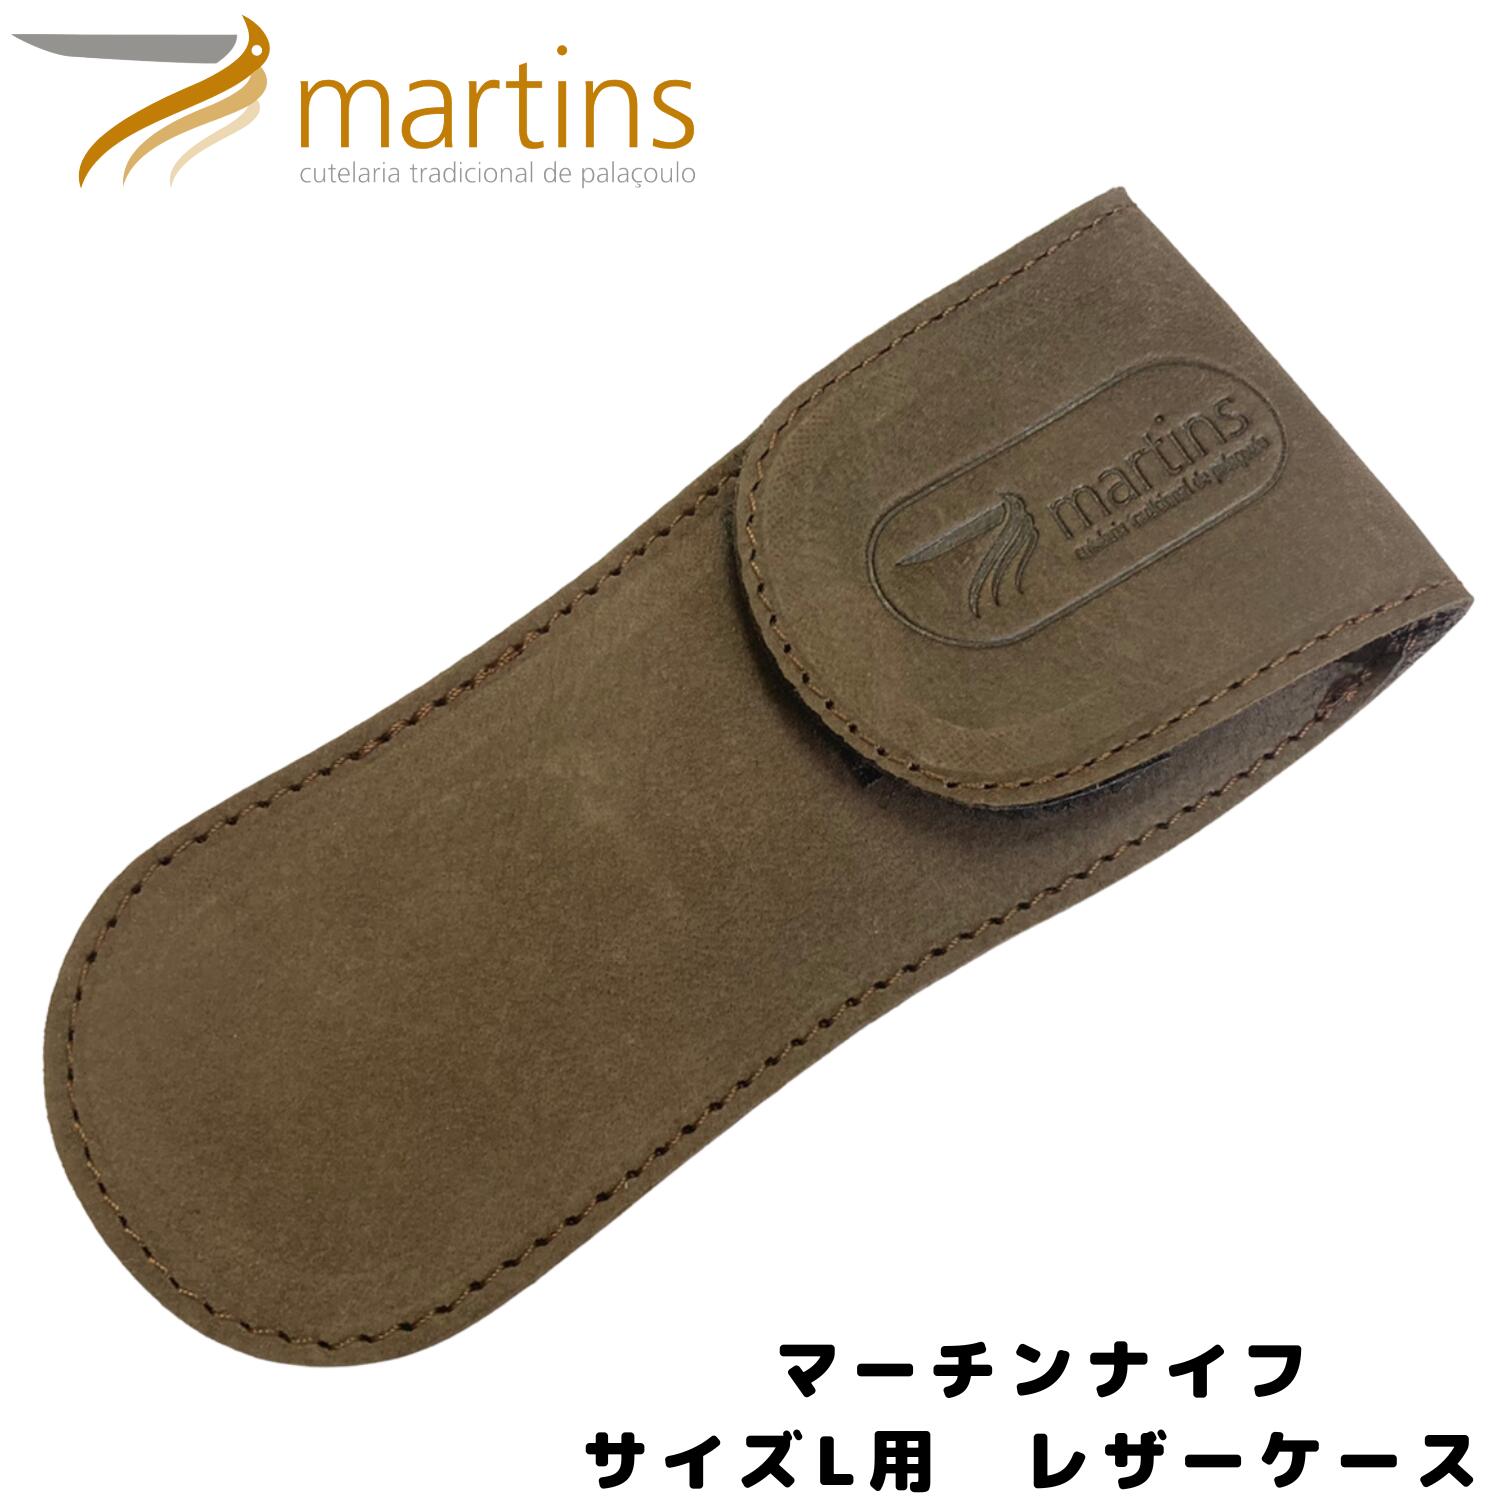 Martins knife(マーチンズ ナイフ) Leather Bag ブラウン レザー ナイフ Lサイズ用 専用カバー アウトドア ナイフ 調理 折り畳みナイフ 新生活